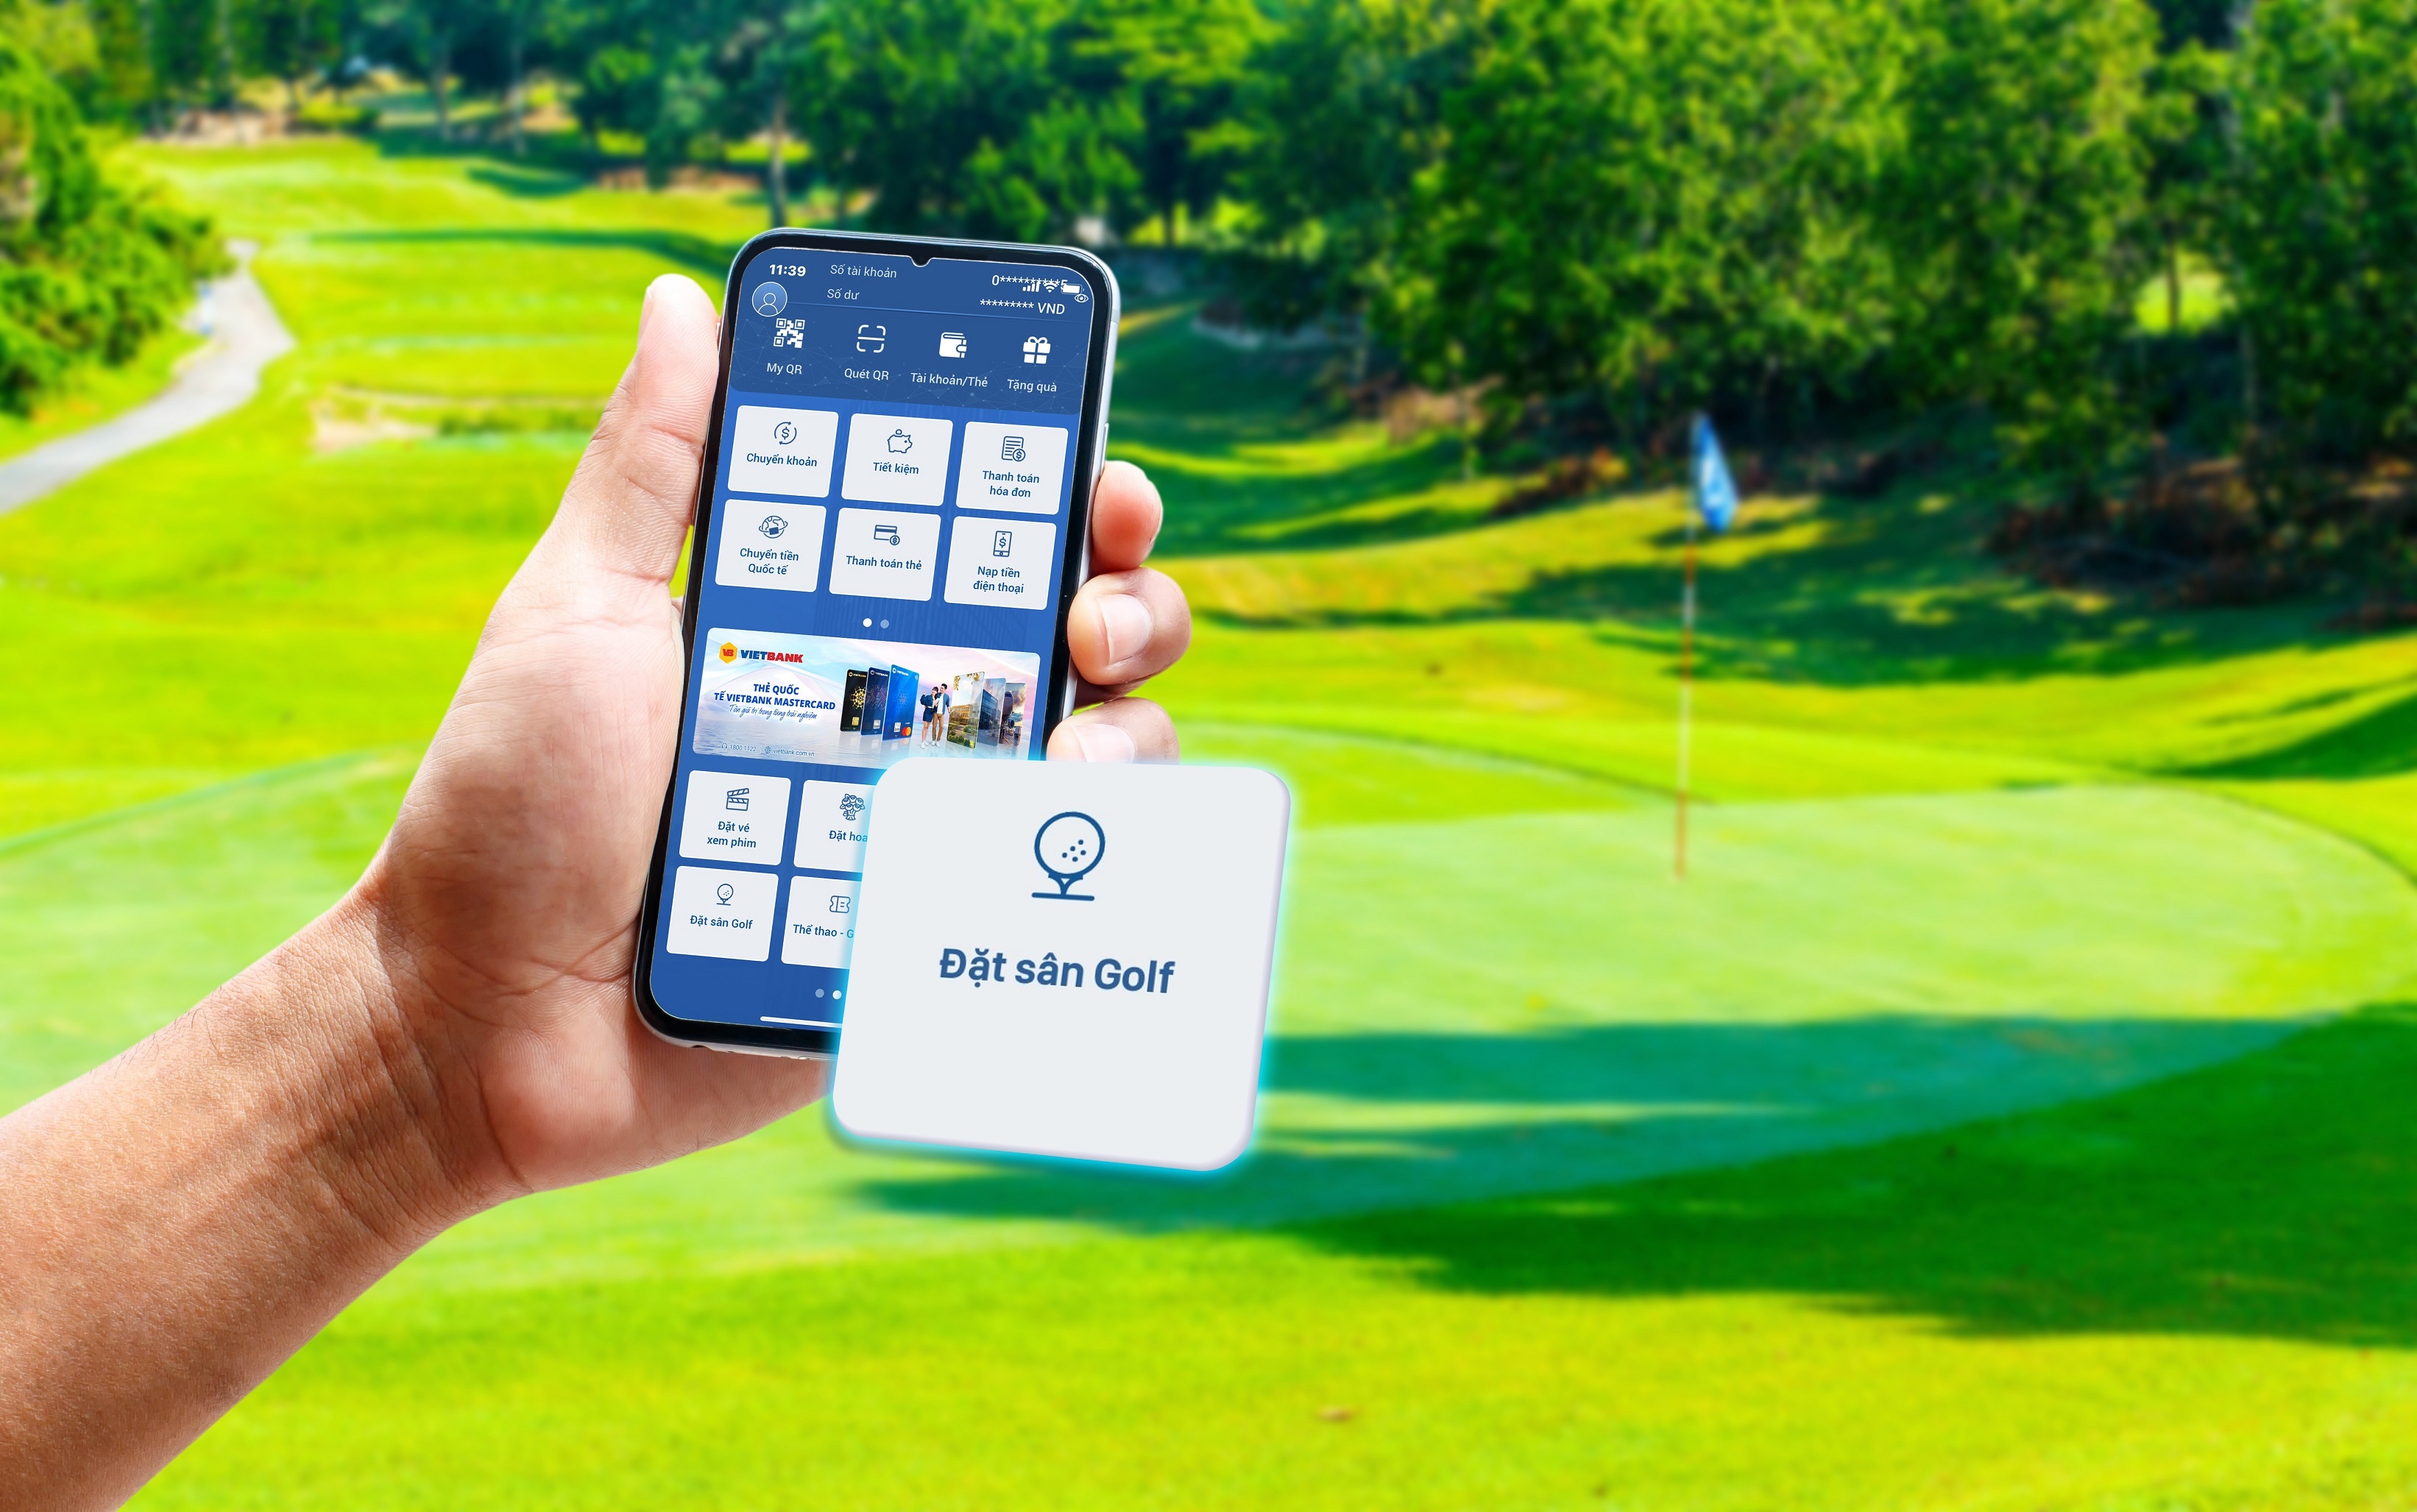 Tính năng “Đặt sân golf” trên ứng dụng Vietbank Digital cho phép khách hàng lựa chọn hệ thống gần 100 sân golf đẹp, nổi tiếng nhất Việt Nam